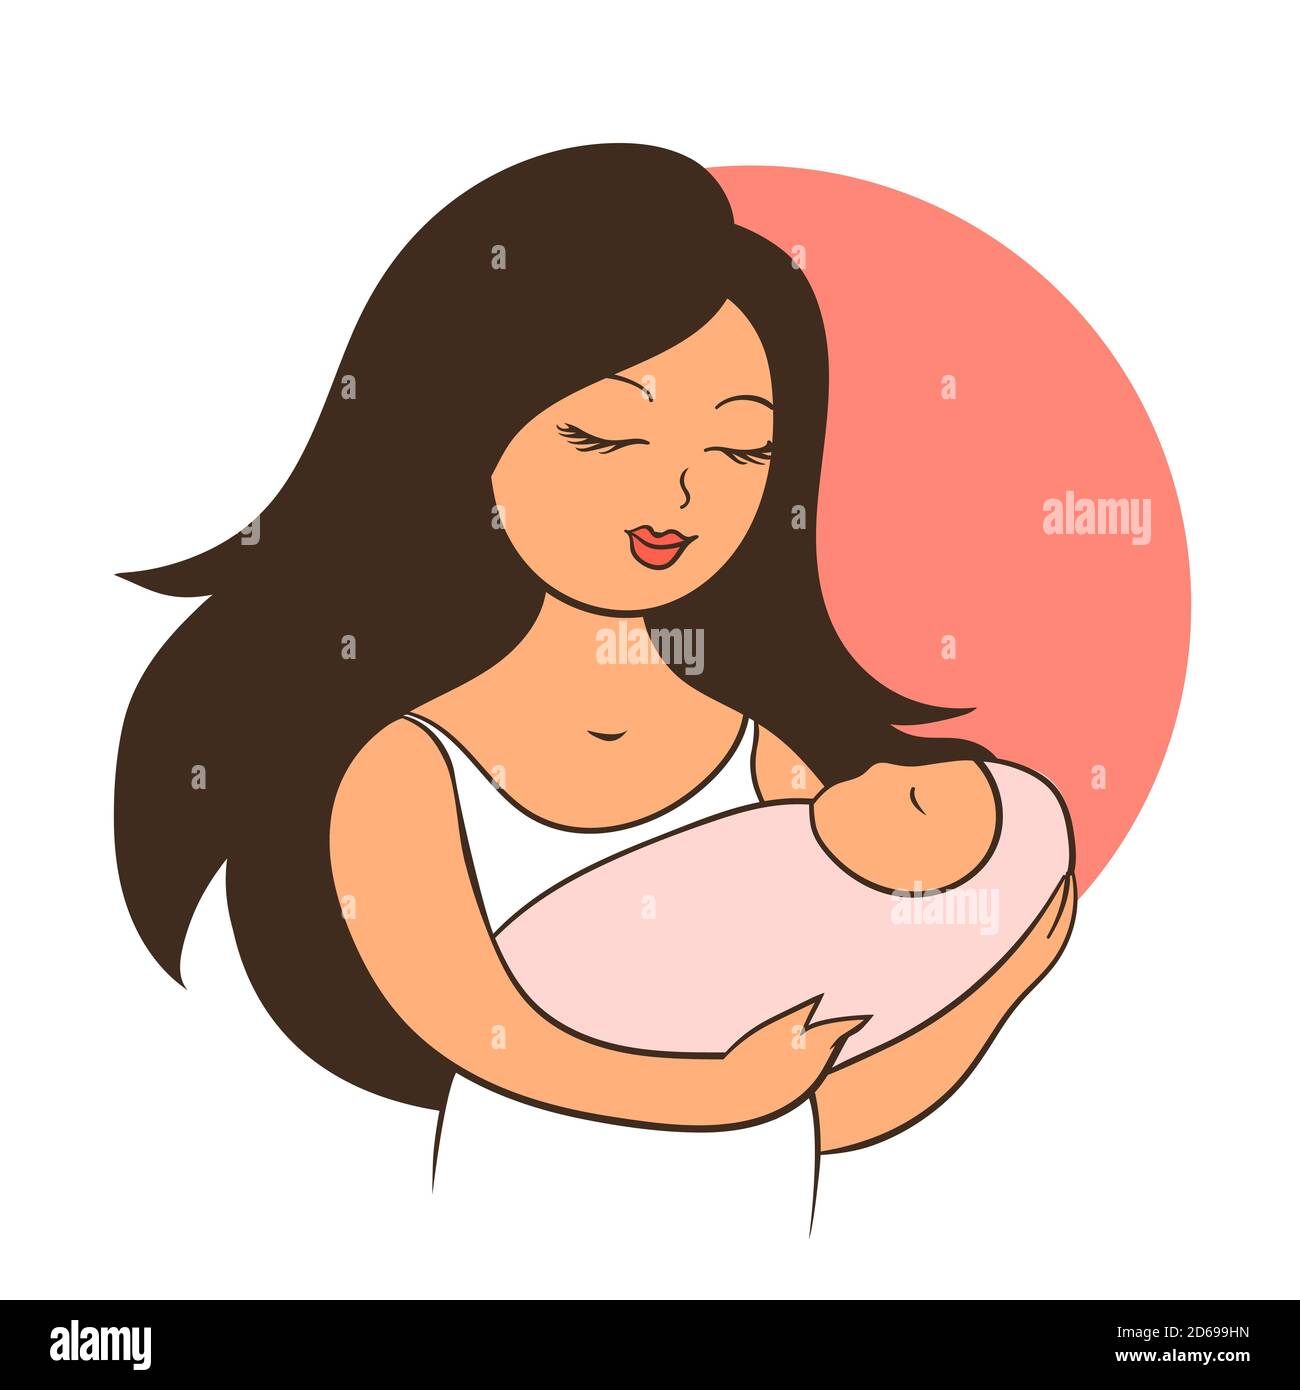 Jeune mère avec un bébé dans ses bras. La femme a un sourire heureux sur son visage. Illustration de dessin animé vectoriel. Illustration de Vecteur